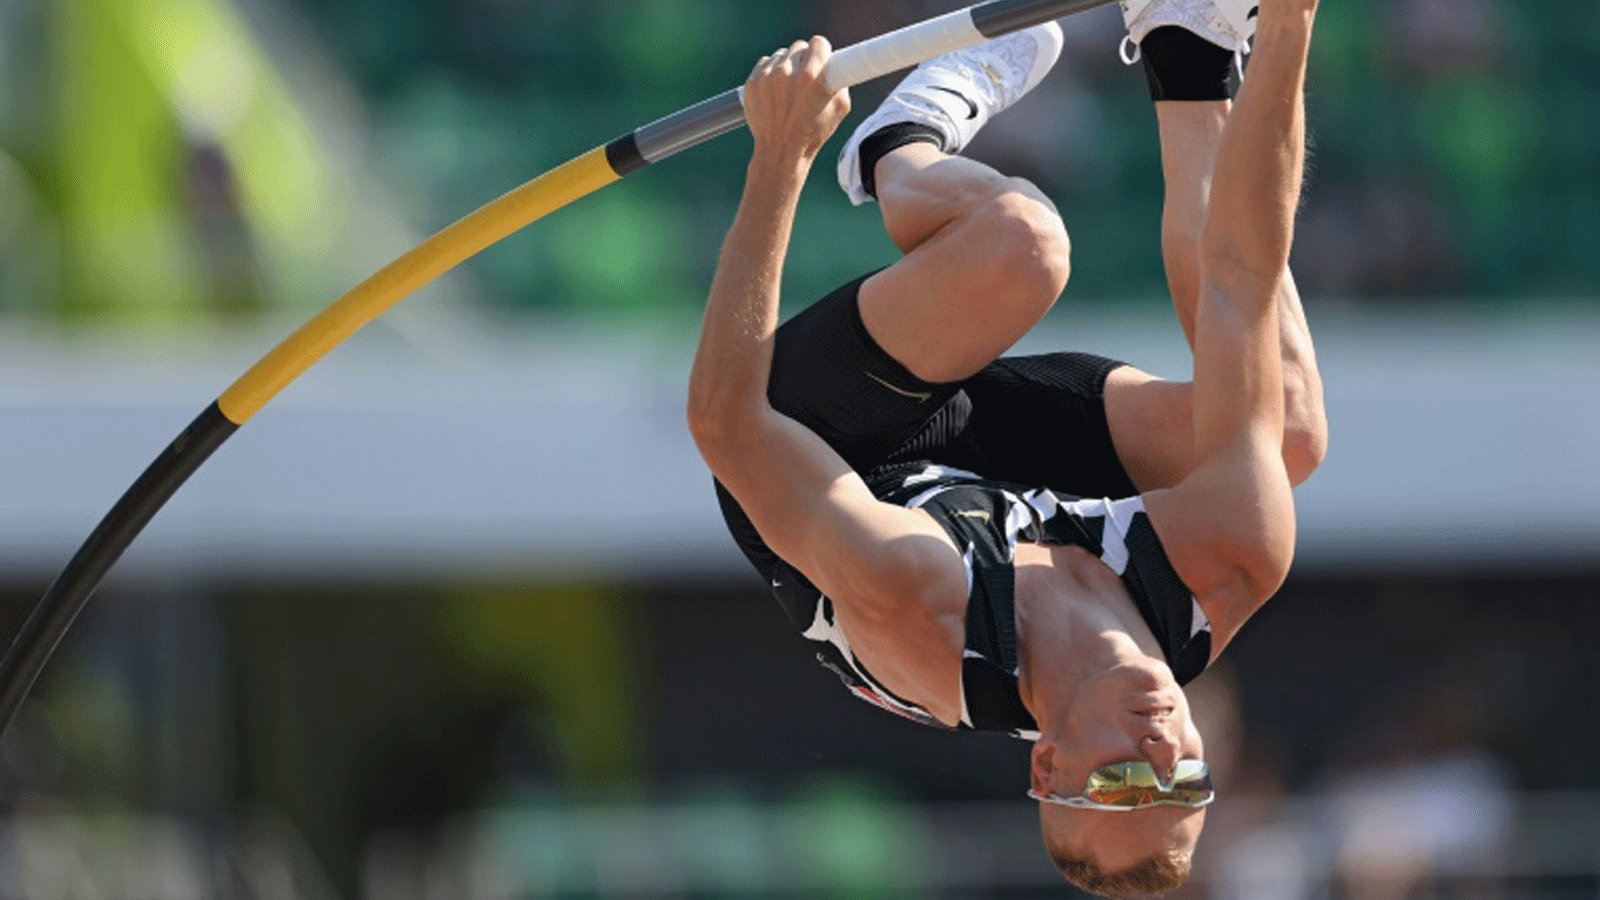 كندريكس حقق ذهبية القفز بالزانة في آخر نسختين من بطولة العالم لألعاب القوى في لندن 2017 والدوحة 2019